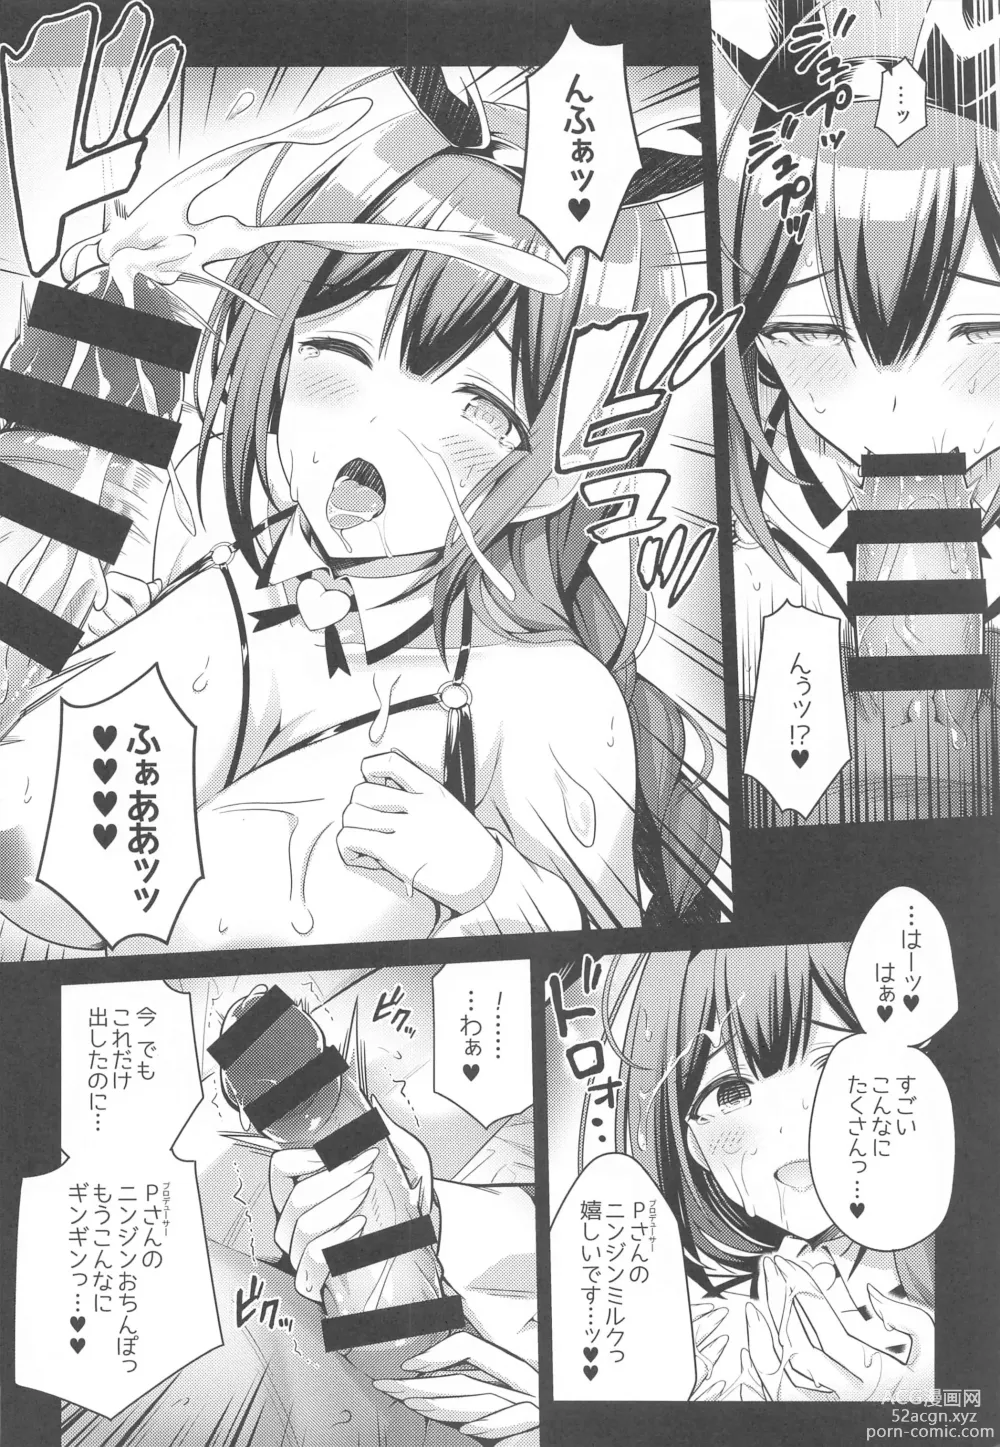 Page 7 of doujinshi 283 Kaiinsei Koukyuu Chijo Toku SS++ Himitsu Chika Idol  Bunny Club  -Chiyuki-